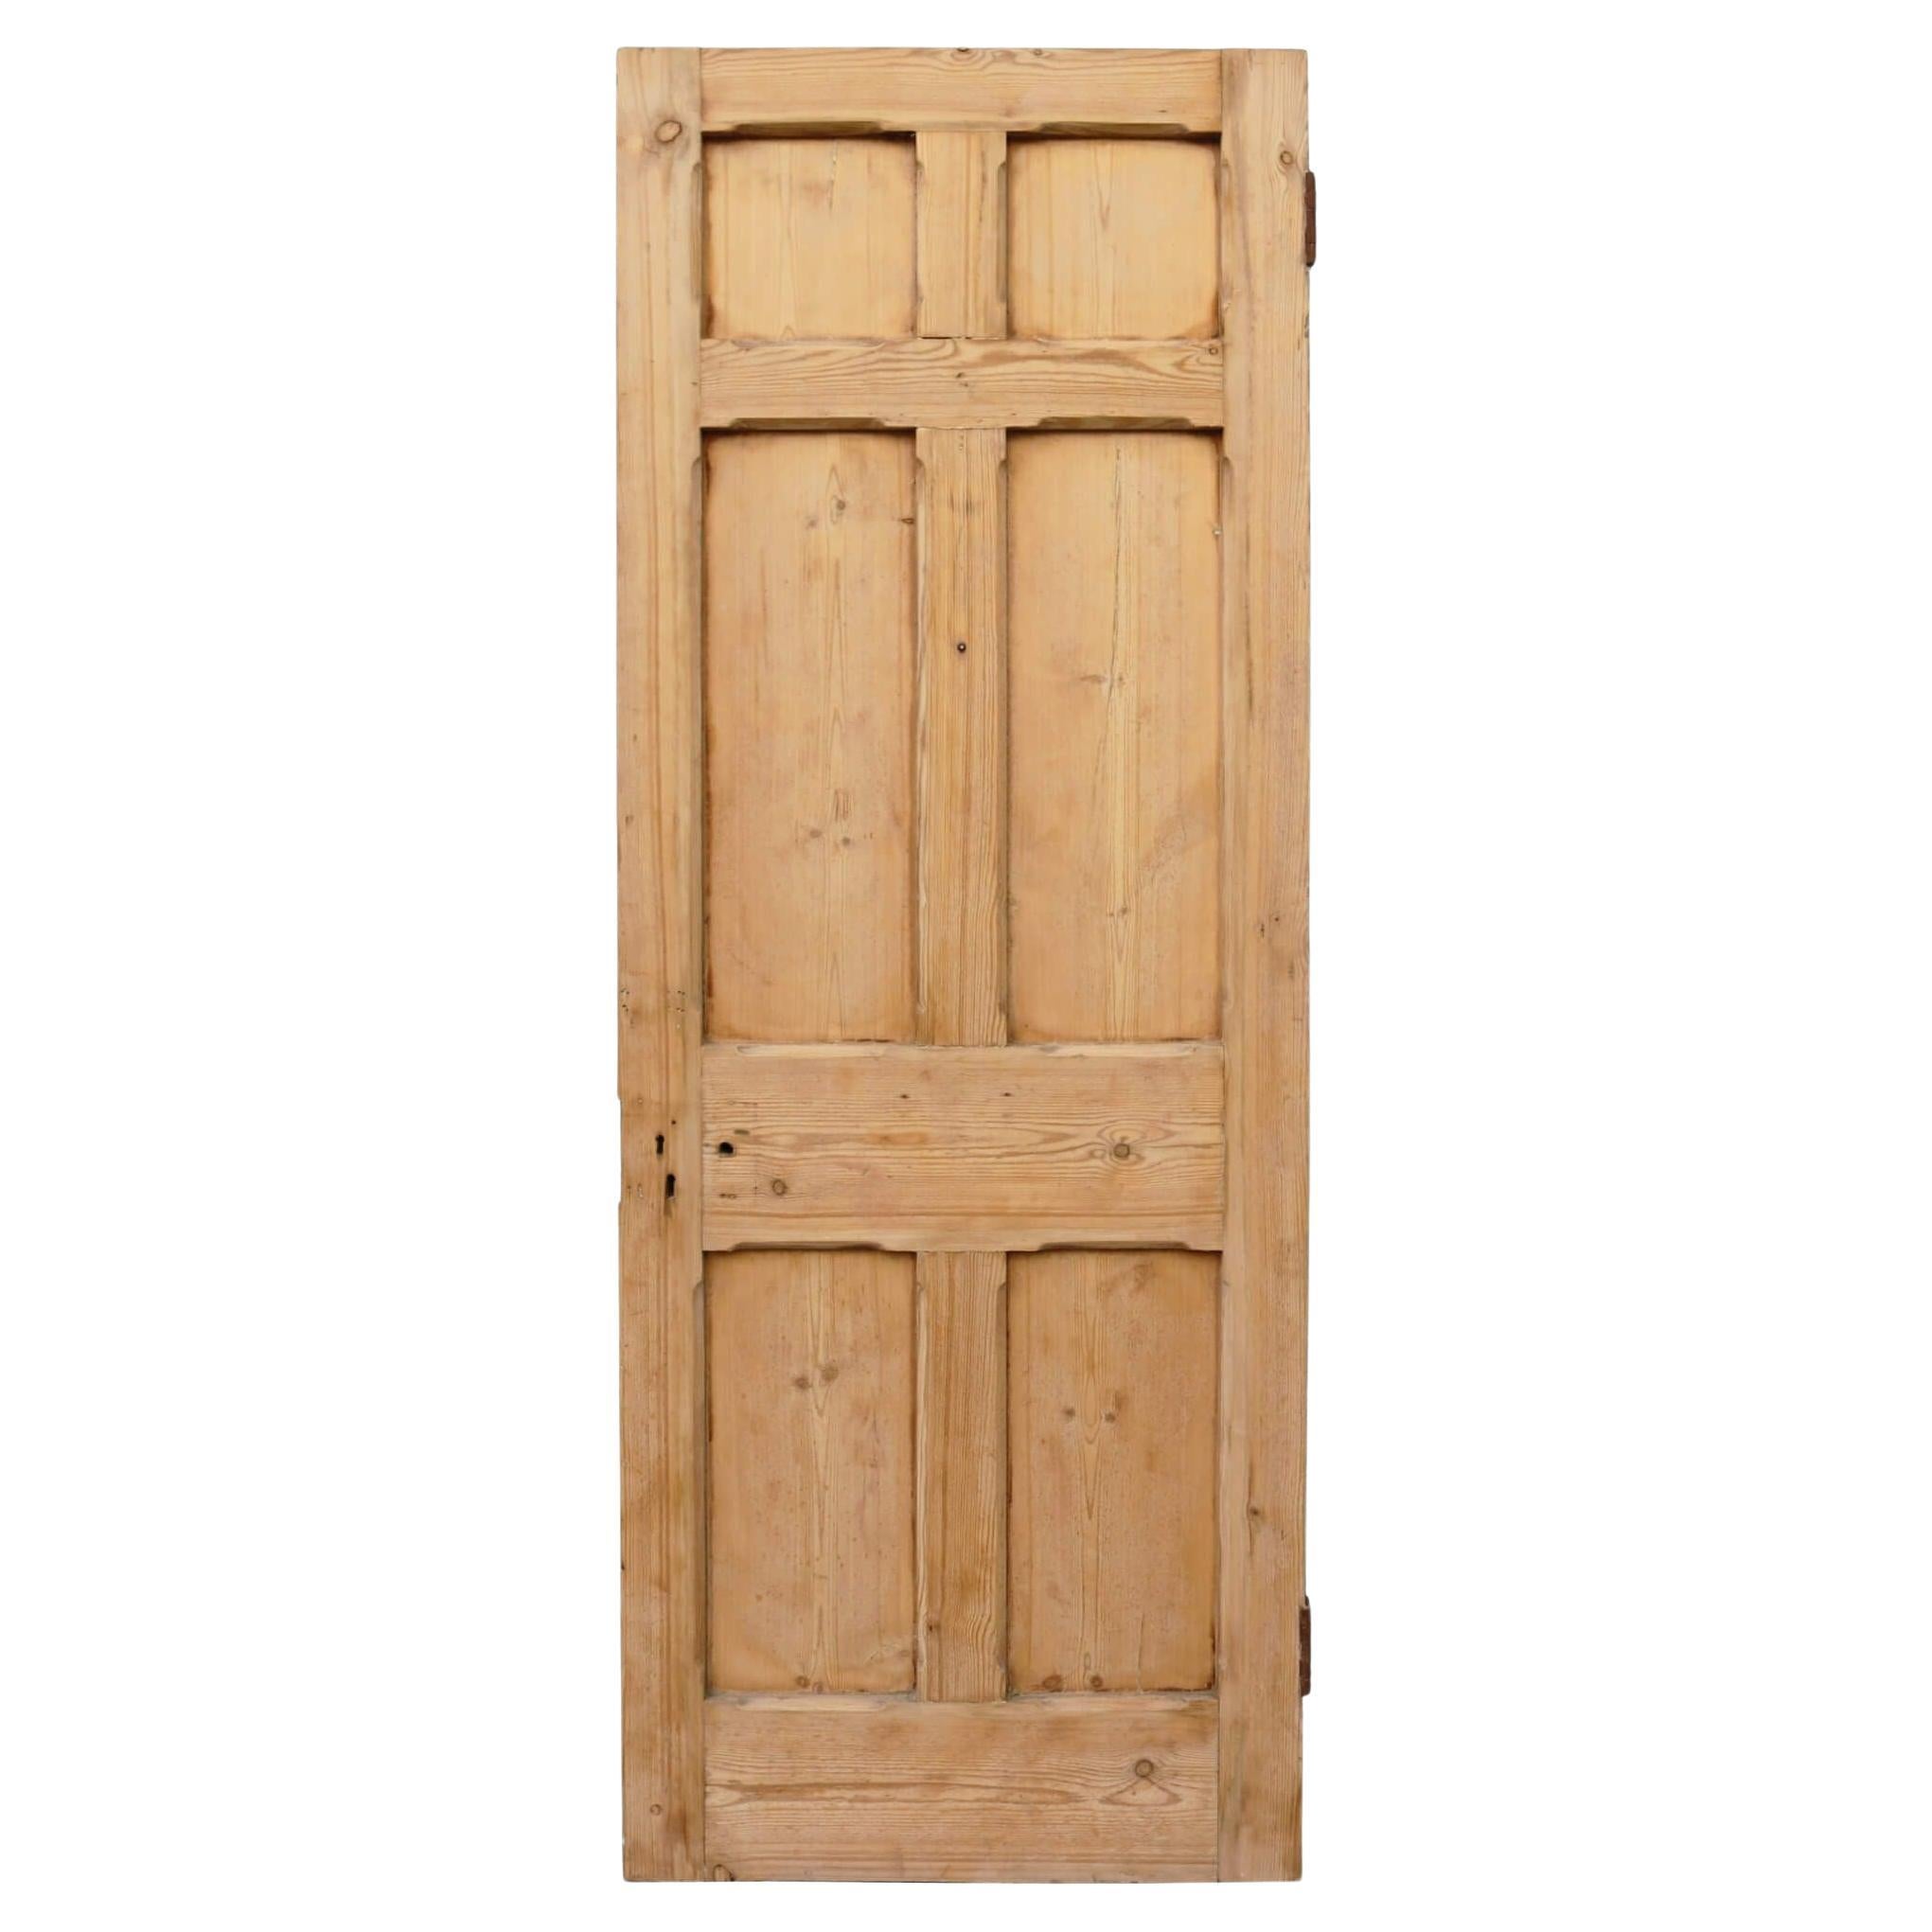 Reclaimed 6-Panel Victorian Pine Internal or Exterior Door For Sale